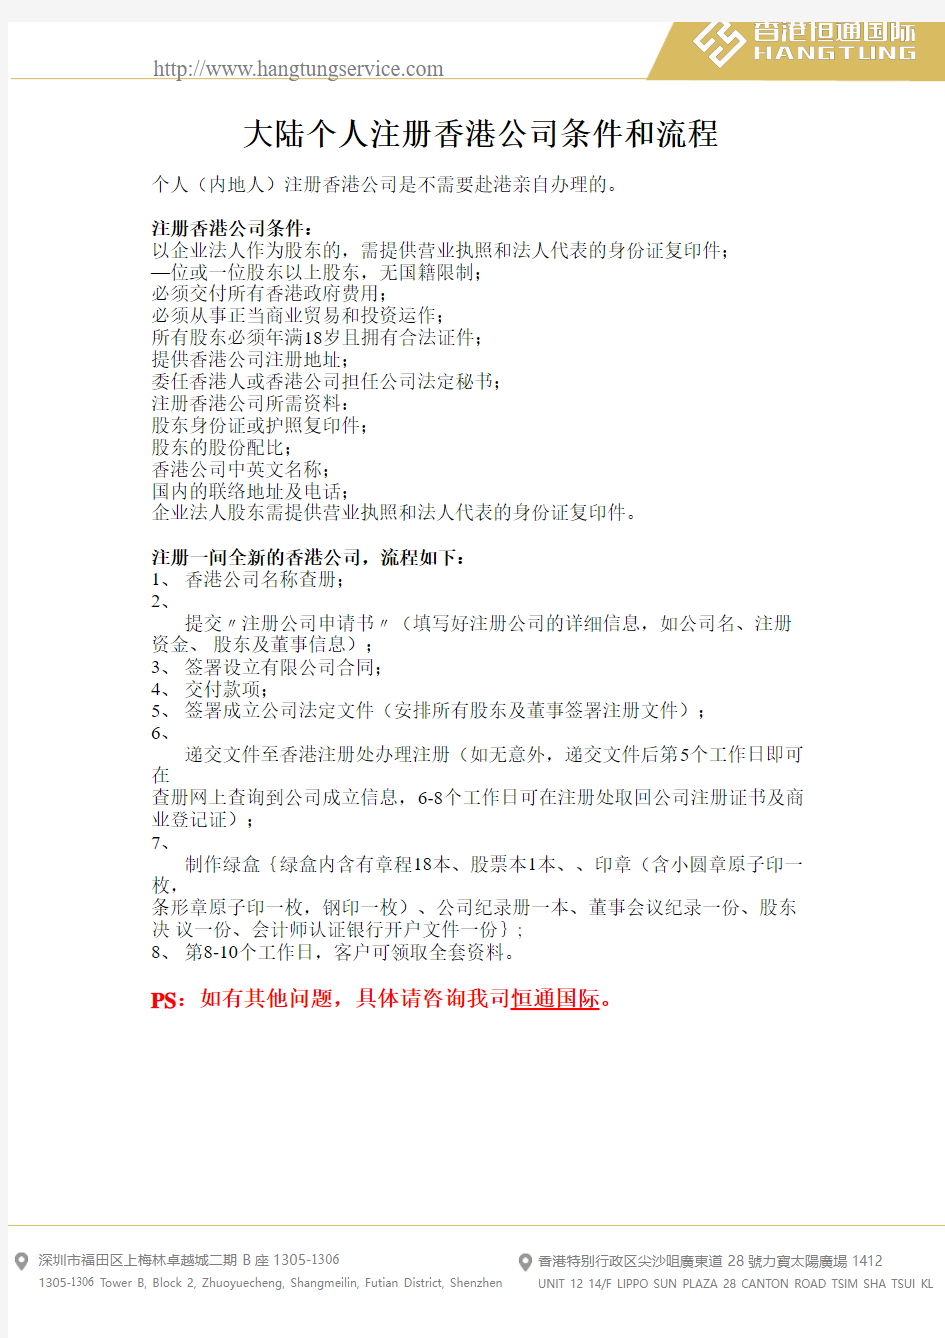 大陆个人注册香港公司条件和流程